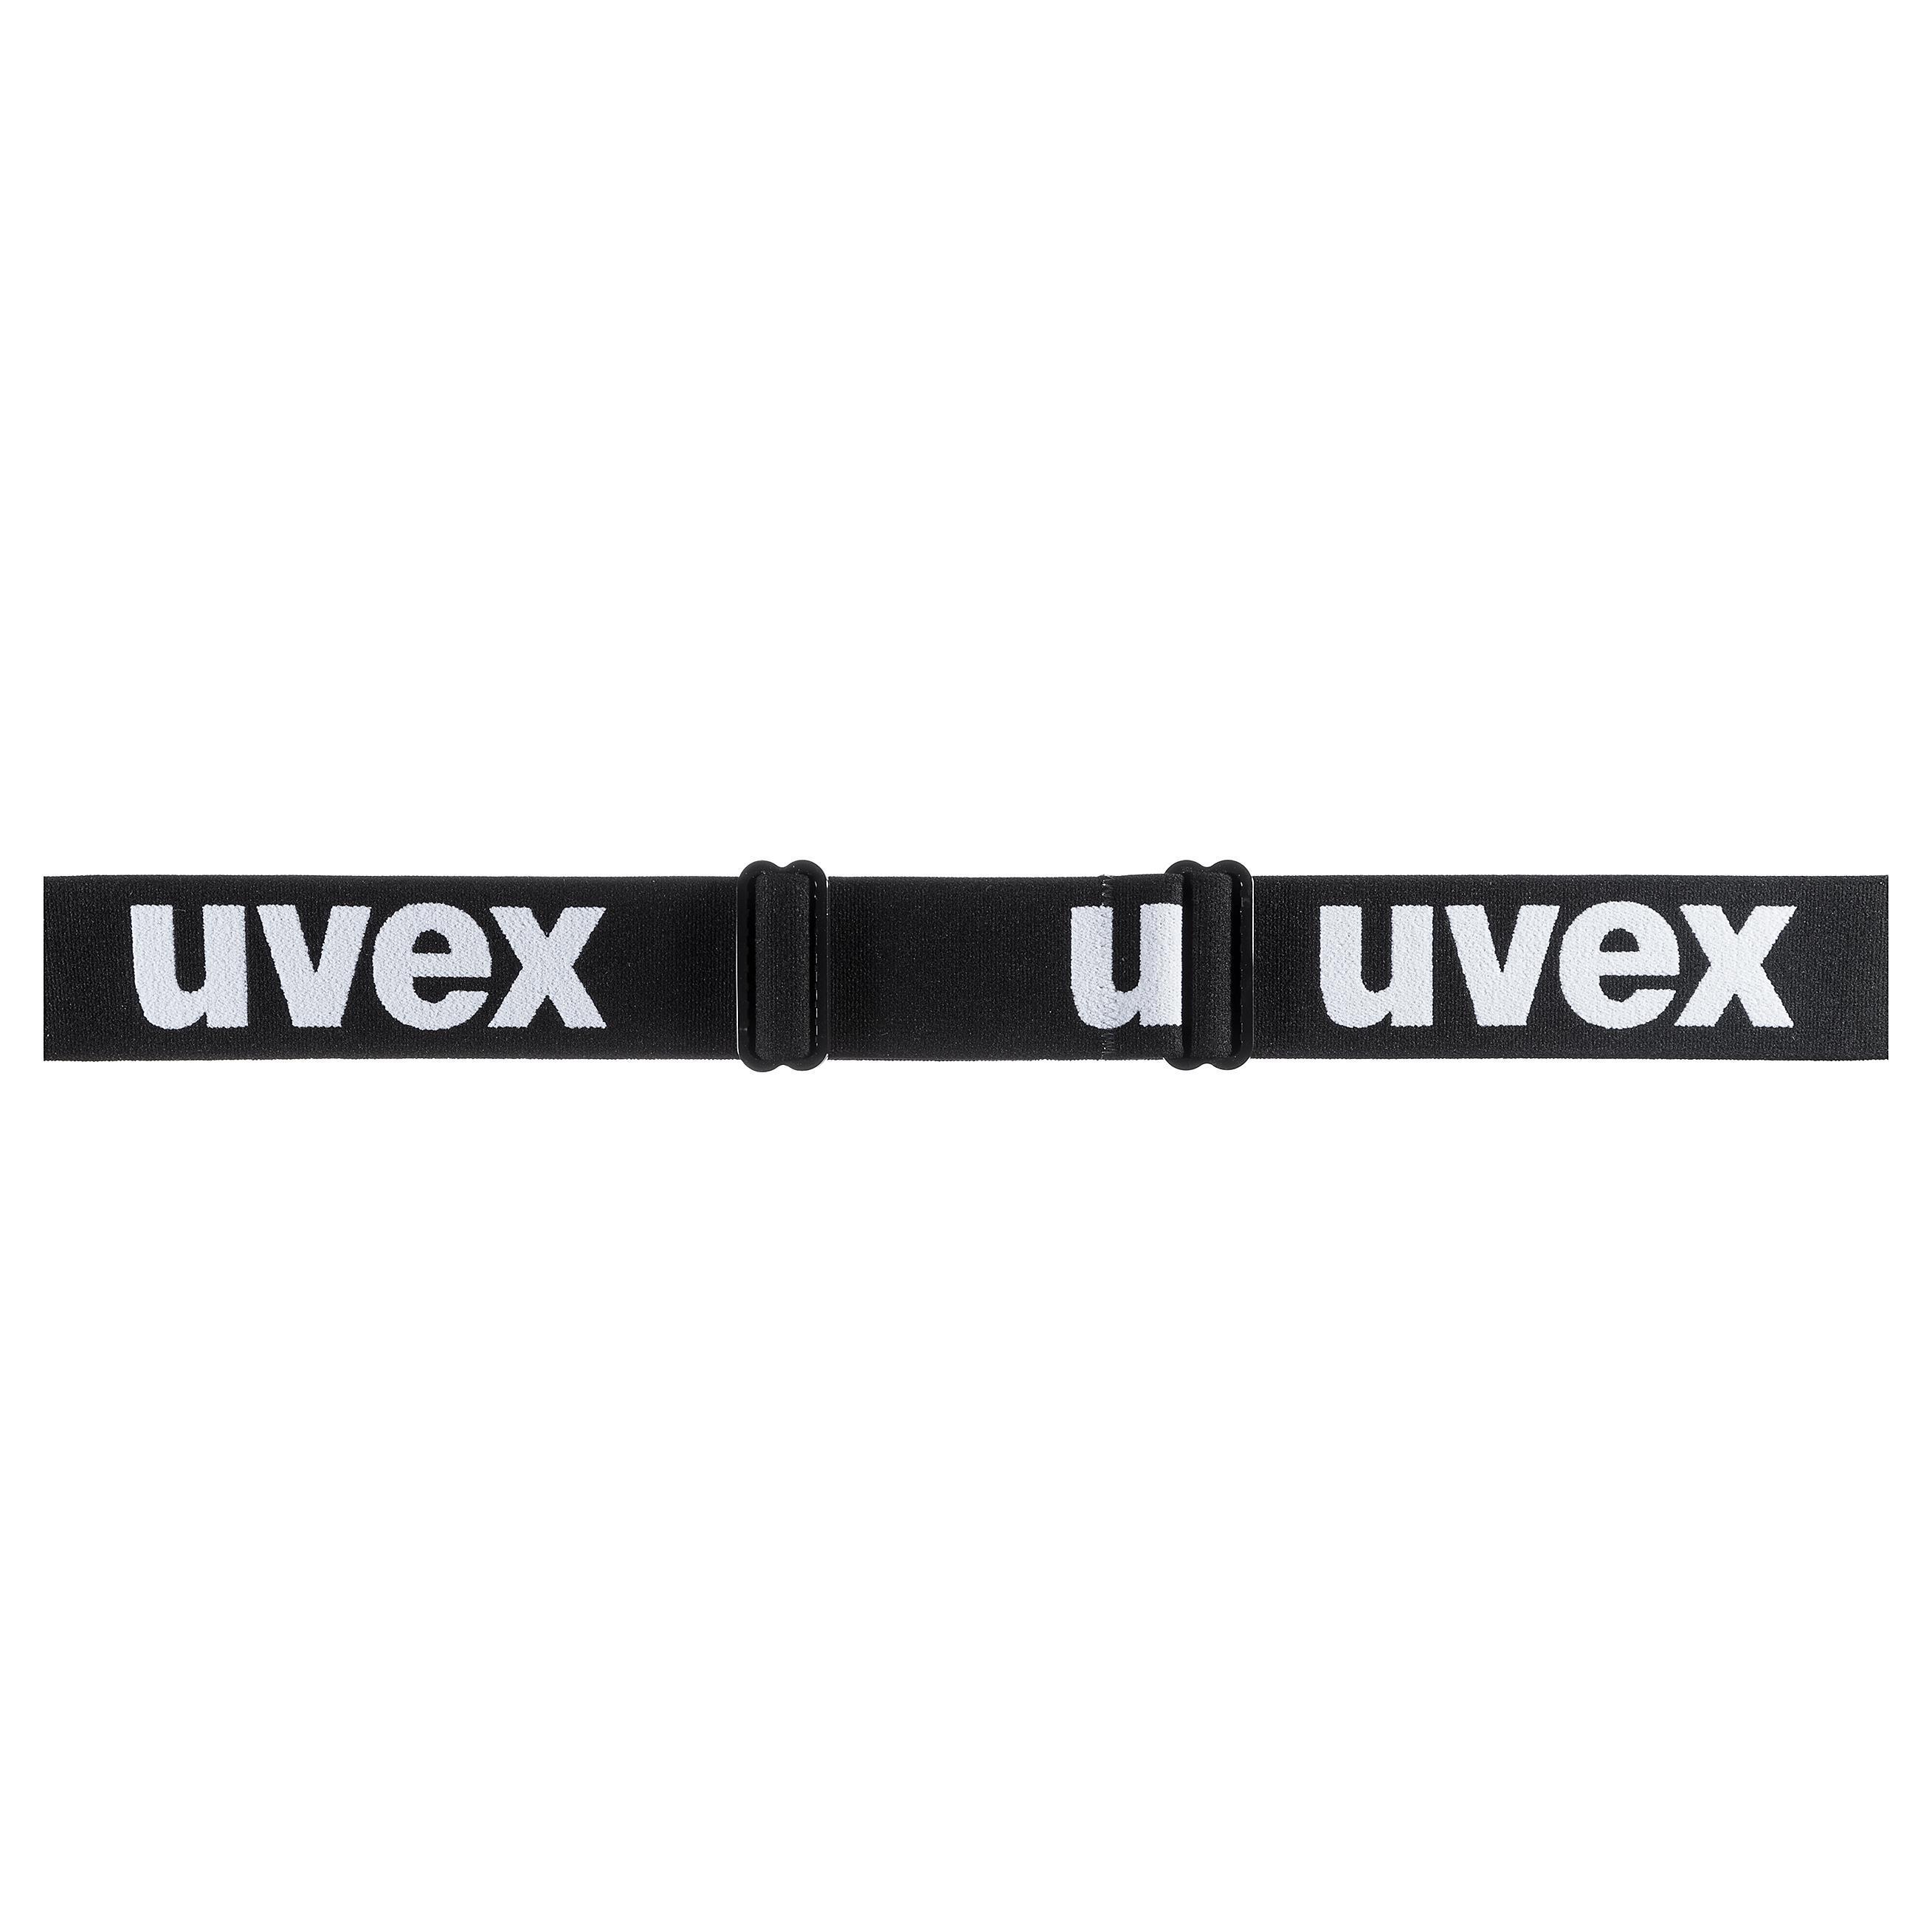 uvex g.gl 3000 TOP black, Ski goggles